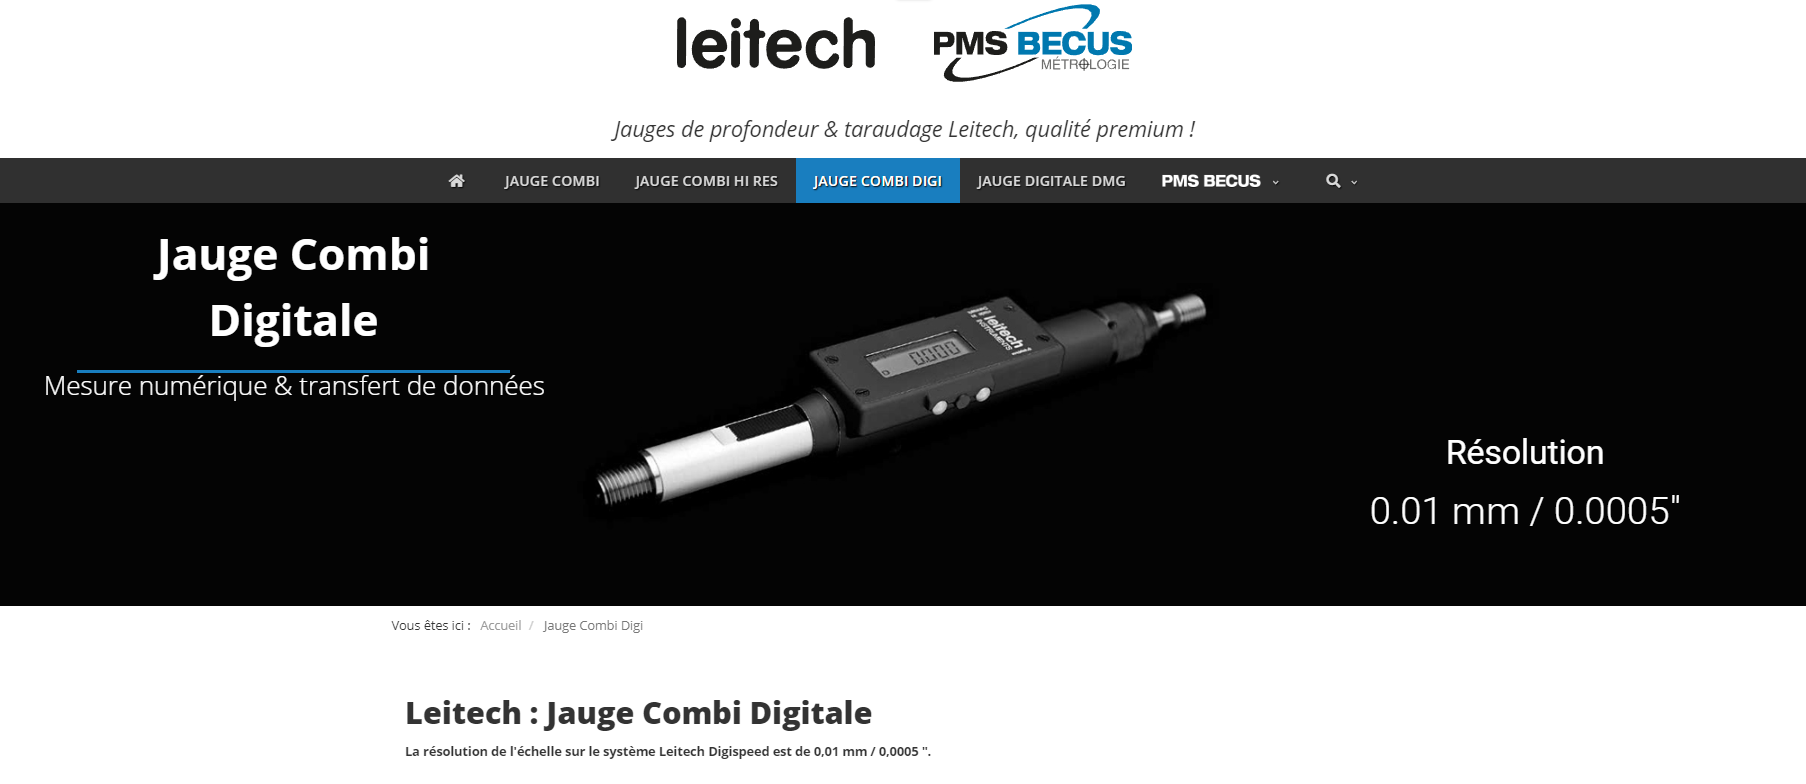 Leitech France : Jauge Combi Digitale